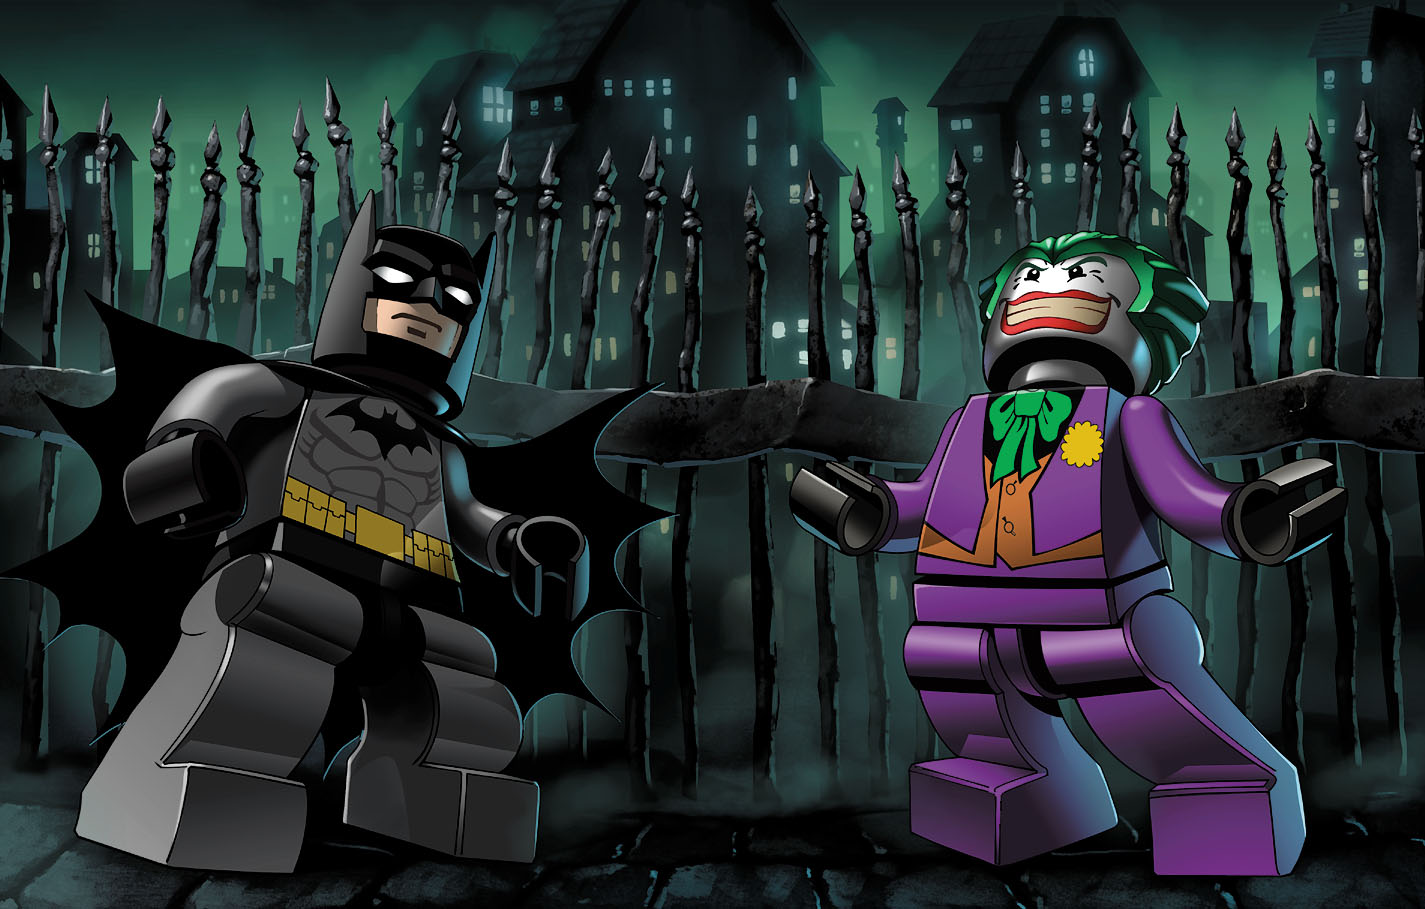 LEGO Batman Cover